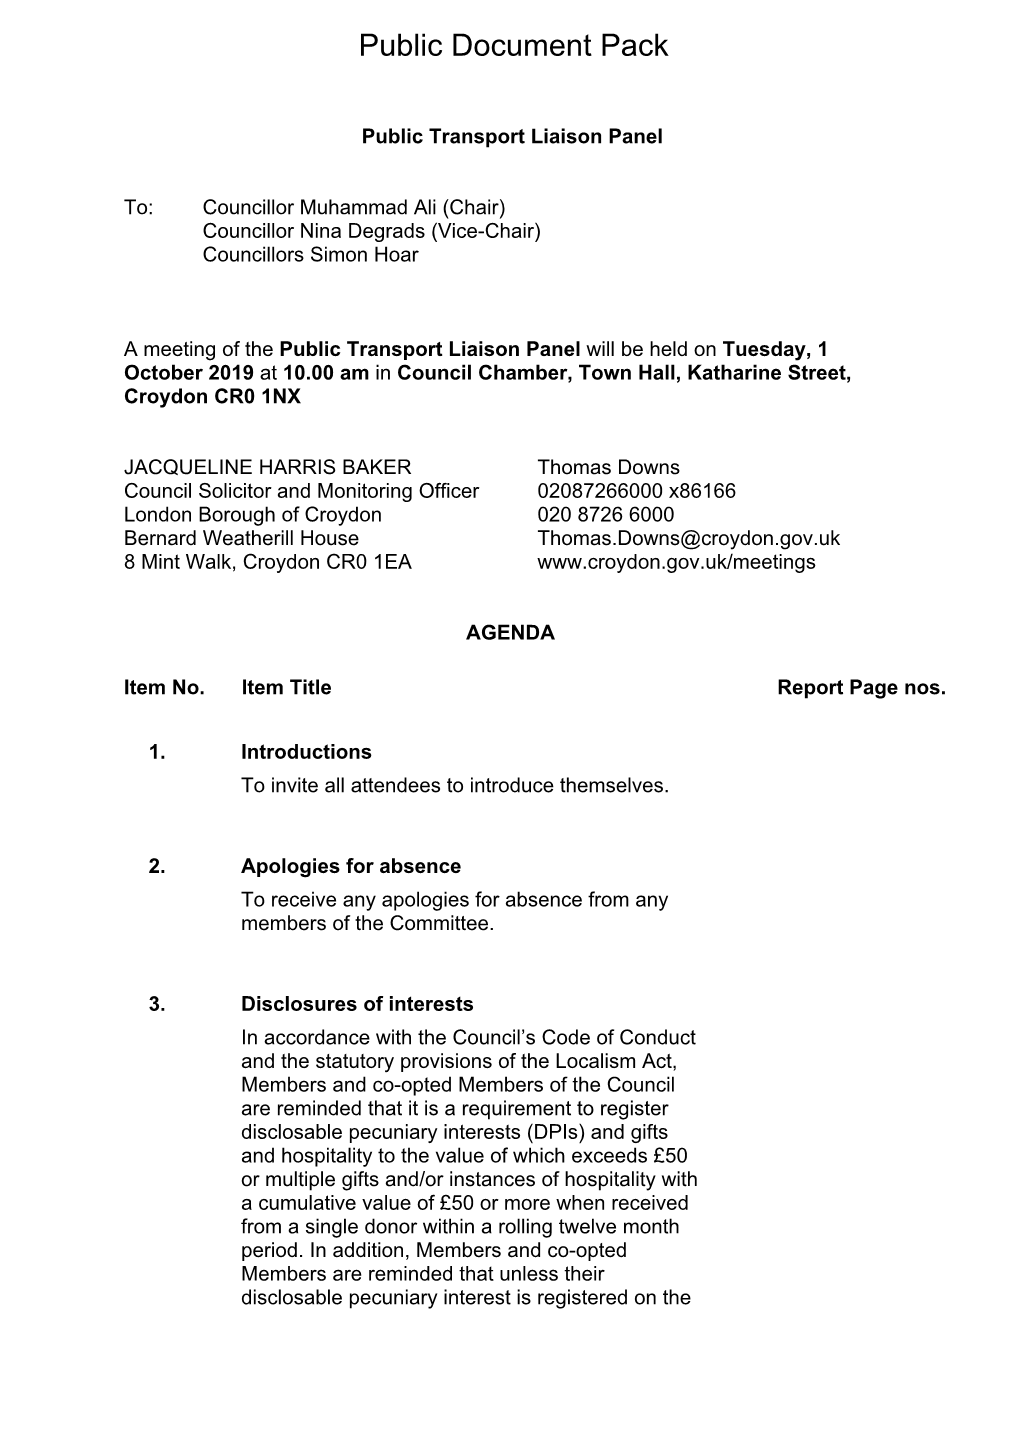 (Public Pack)Agenda Document for Public Transport Liaison Panel, 01